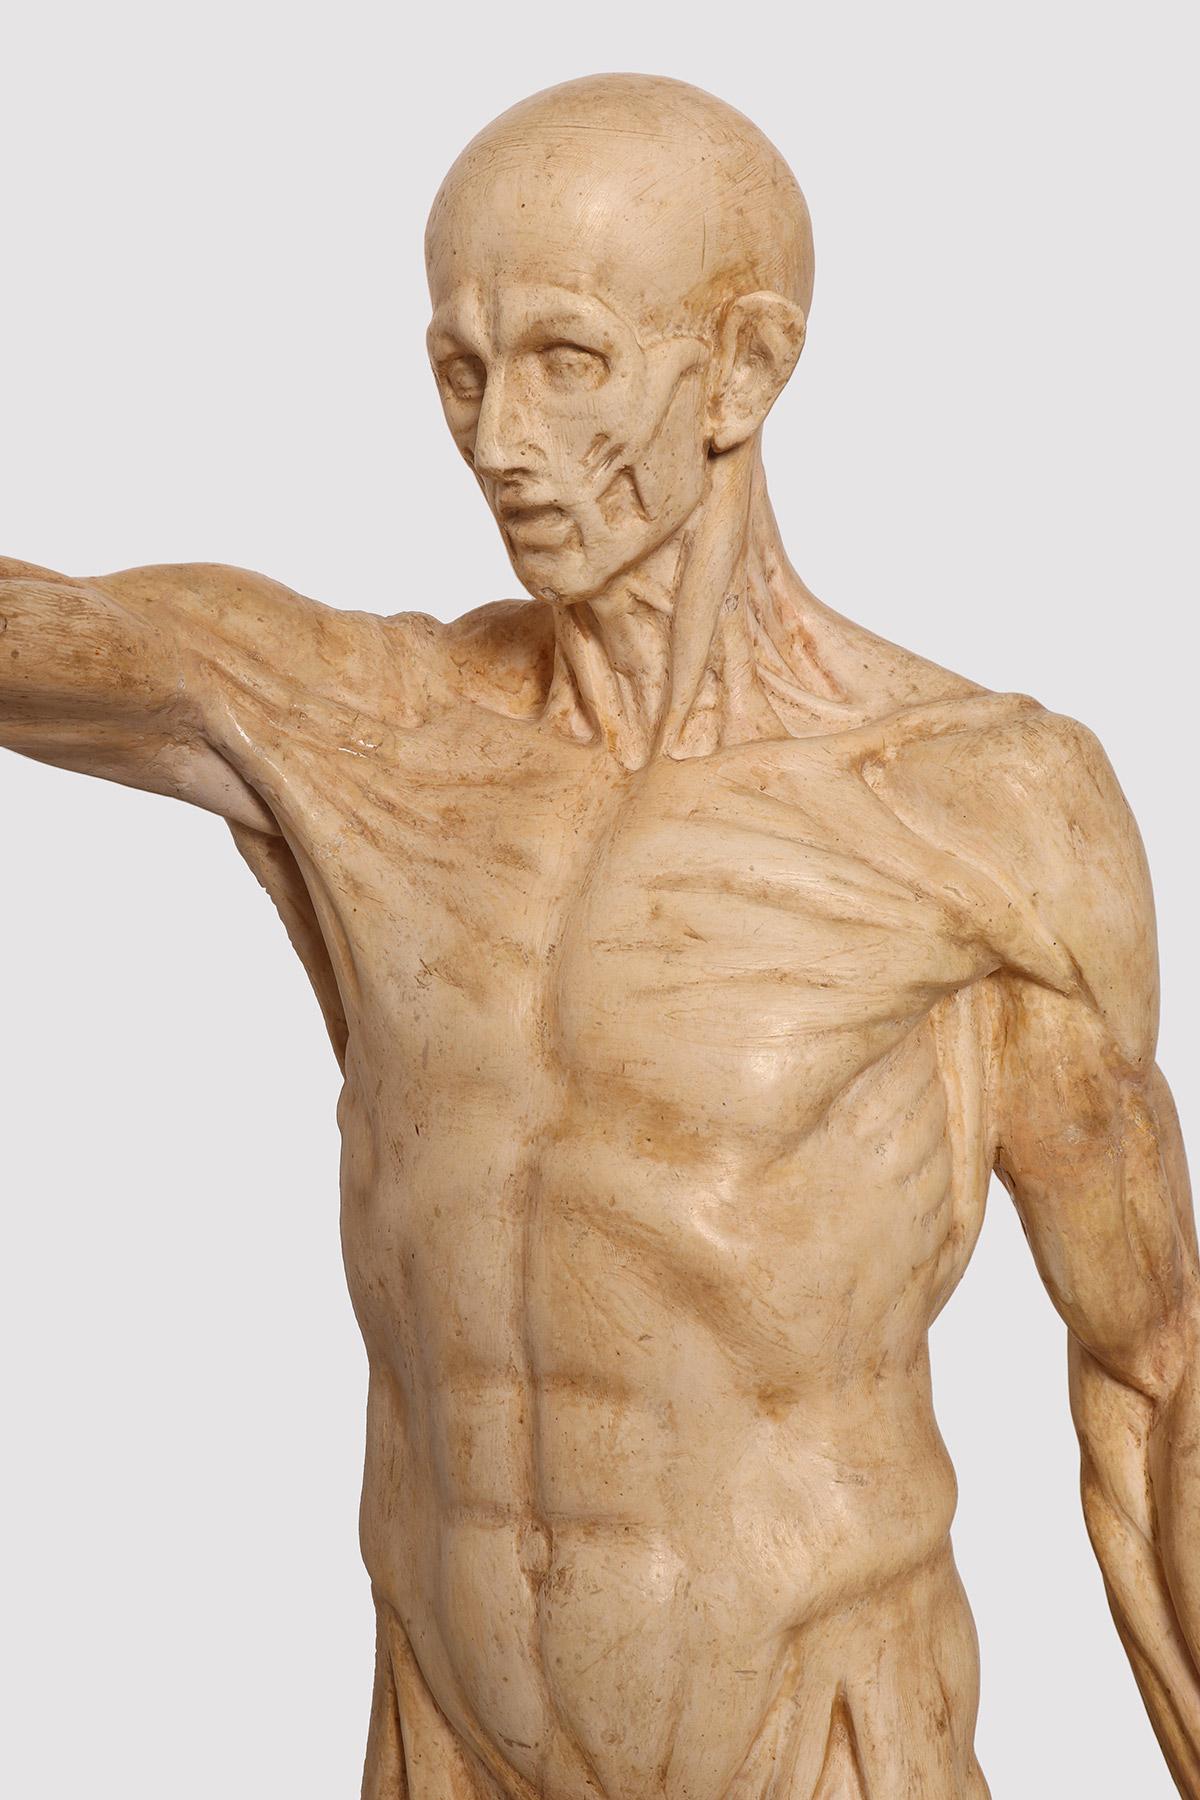 arm skin anatomy